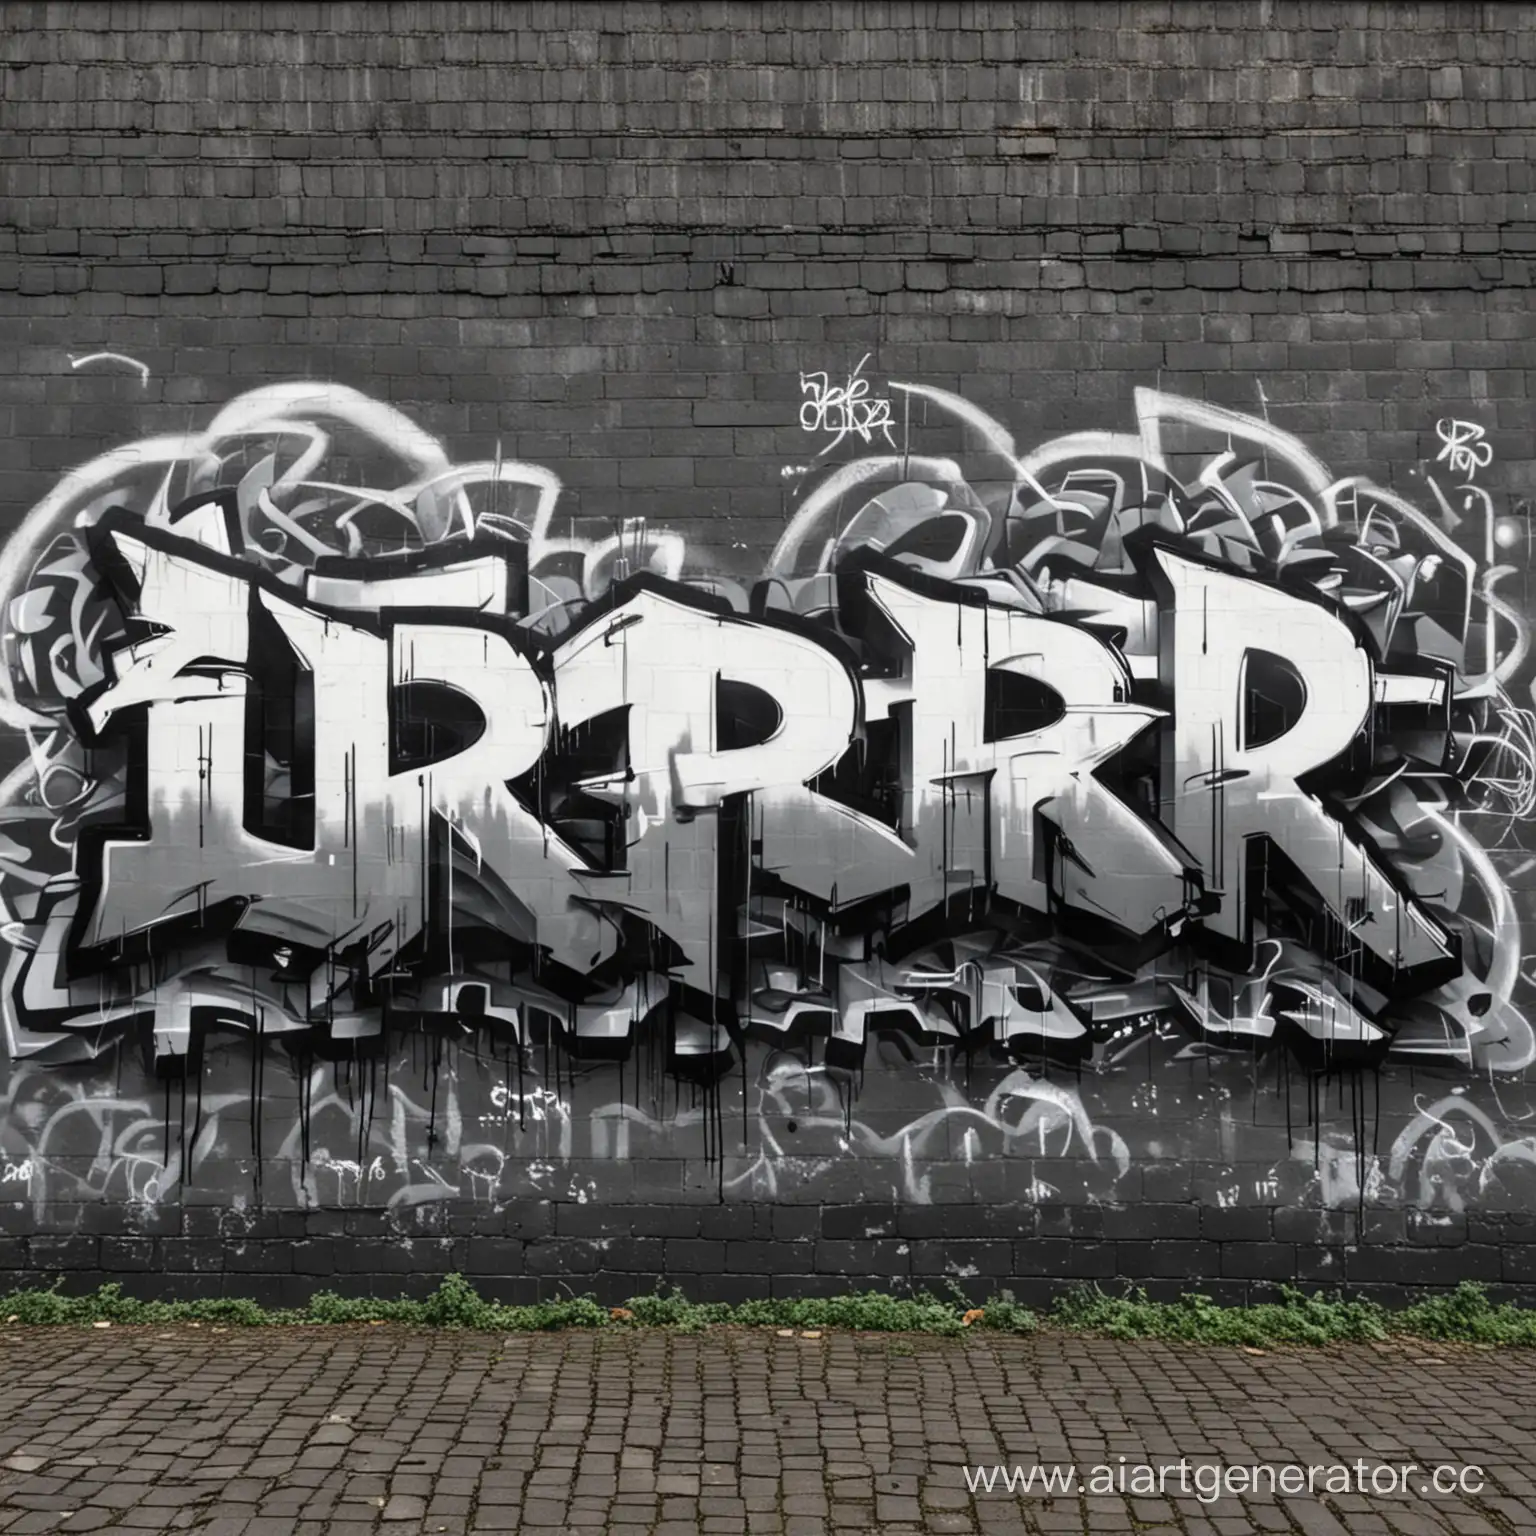 Urban-Nightlife-Graffiti-Art-OBR-on-a-Dark-Wall